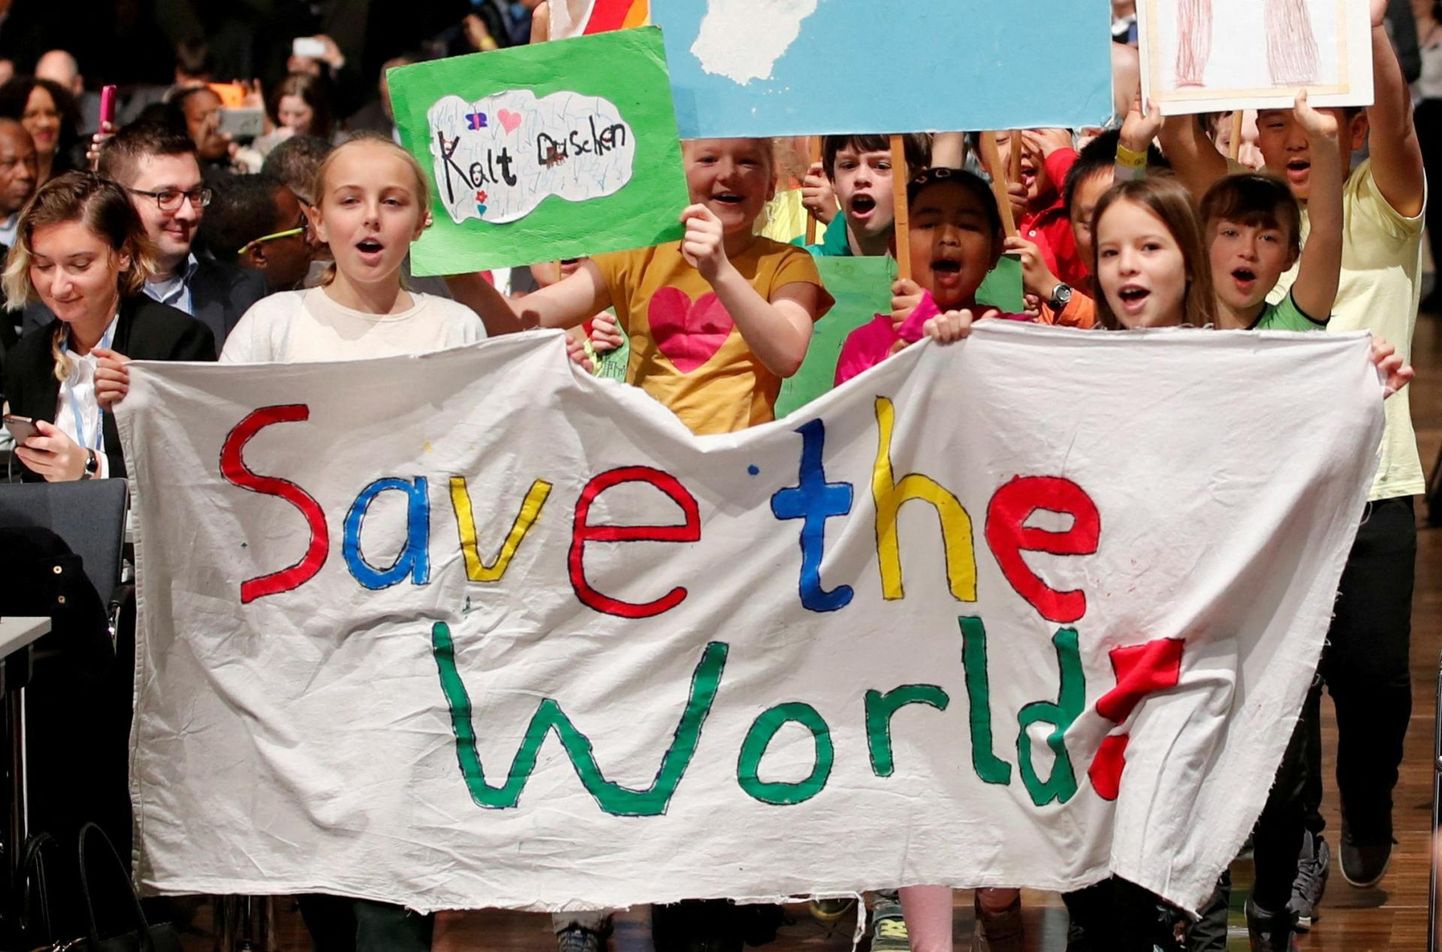 Tihti on mure laste pärast, eriti isiklike laste pärast, peamine, mis tekitab adekvaatseid looduskaitselisi afekte. Laste meeleavaldus ÜRO kliimakonverentsil.